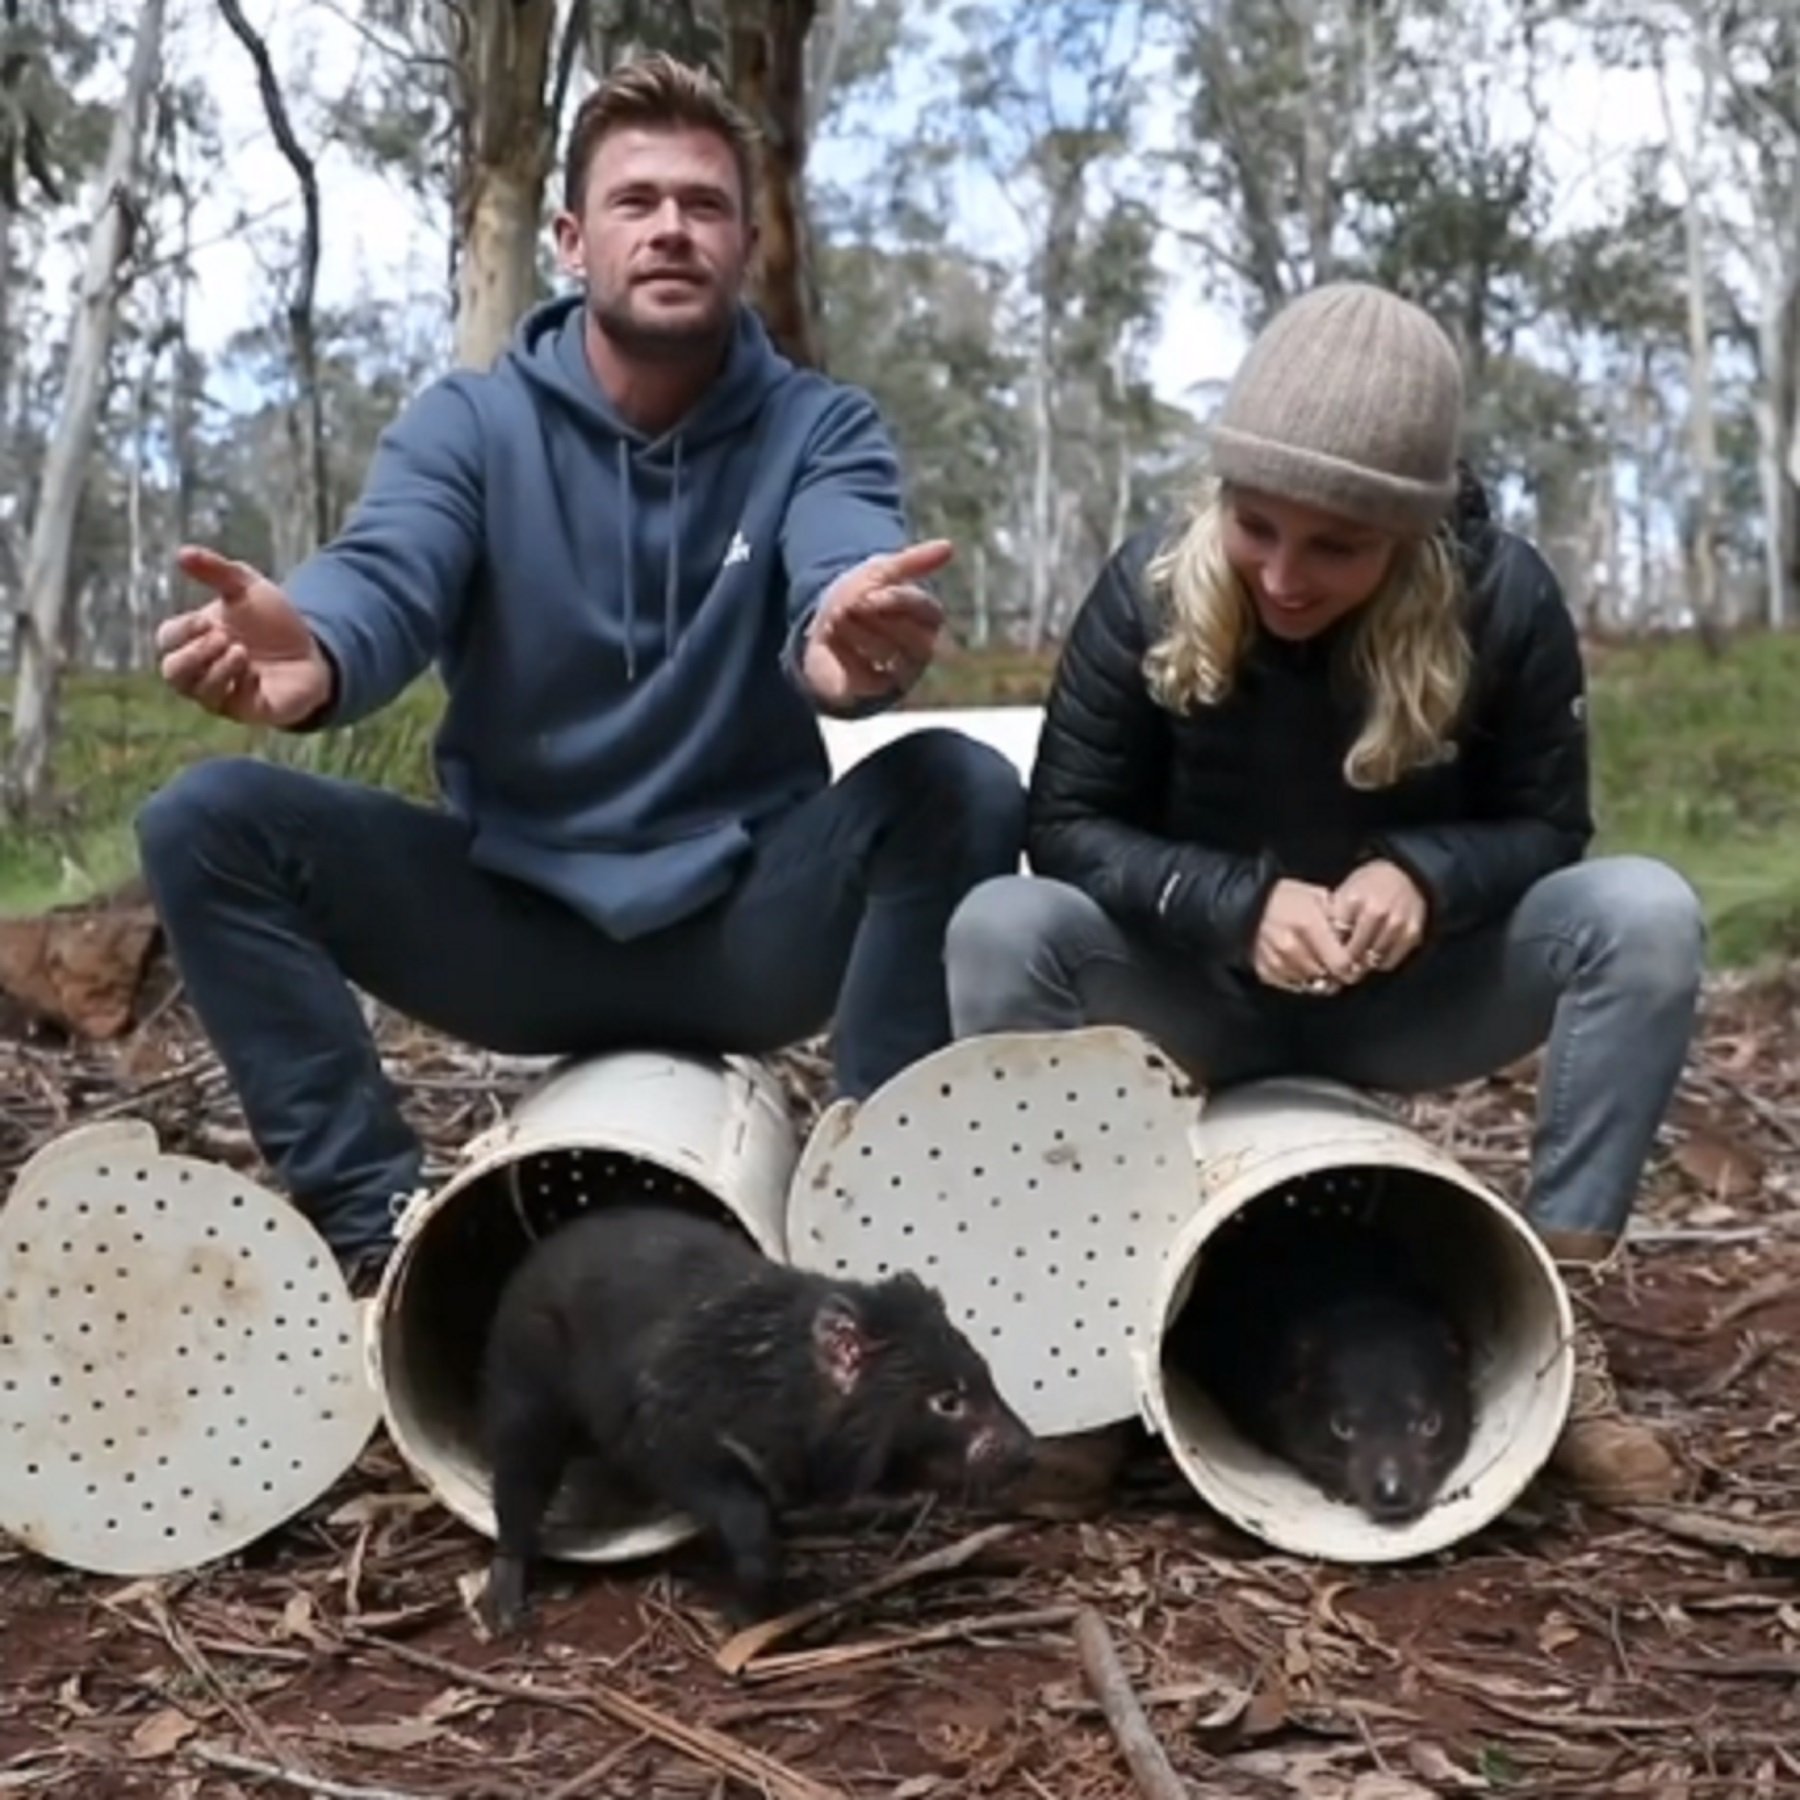 Gest animalista de Pataky i Hemsworth reintroduint espècies a Austràlia